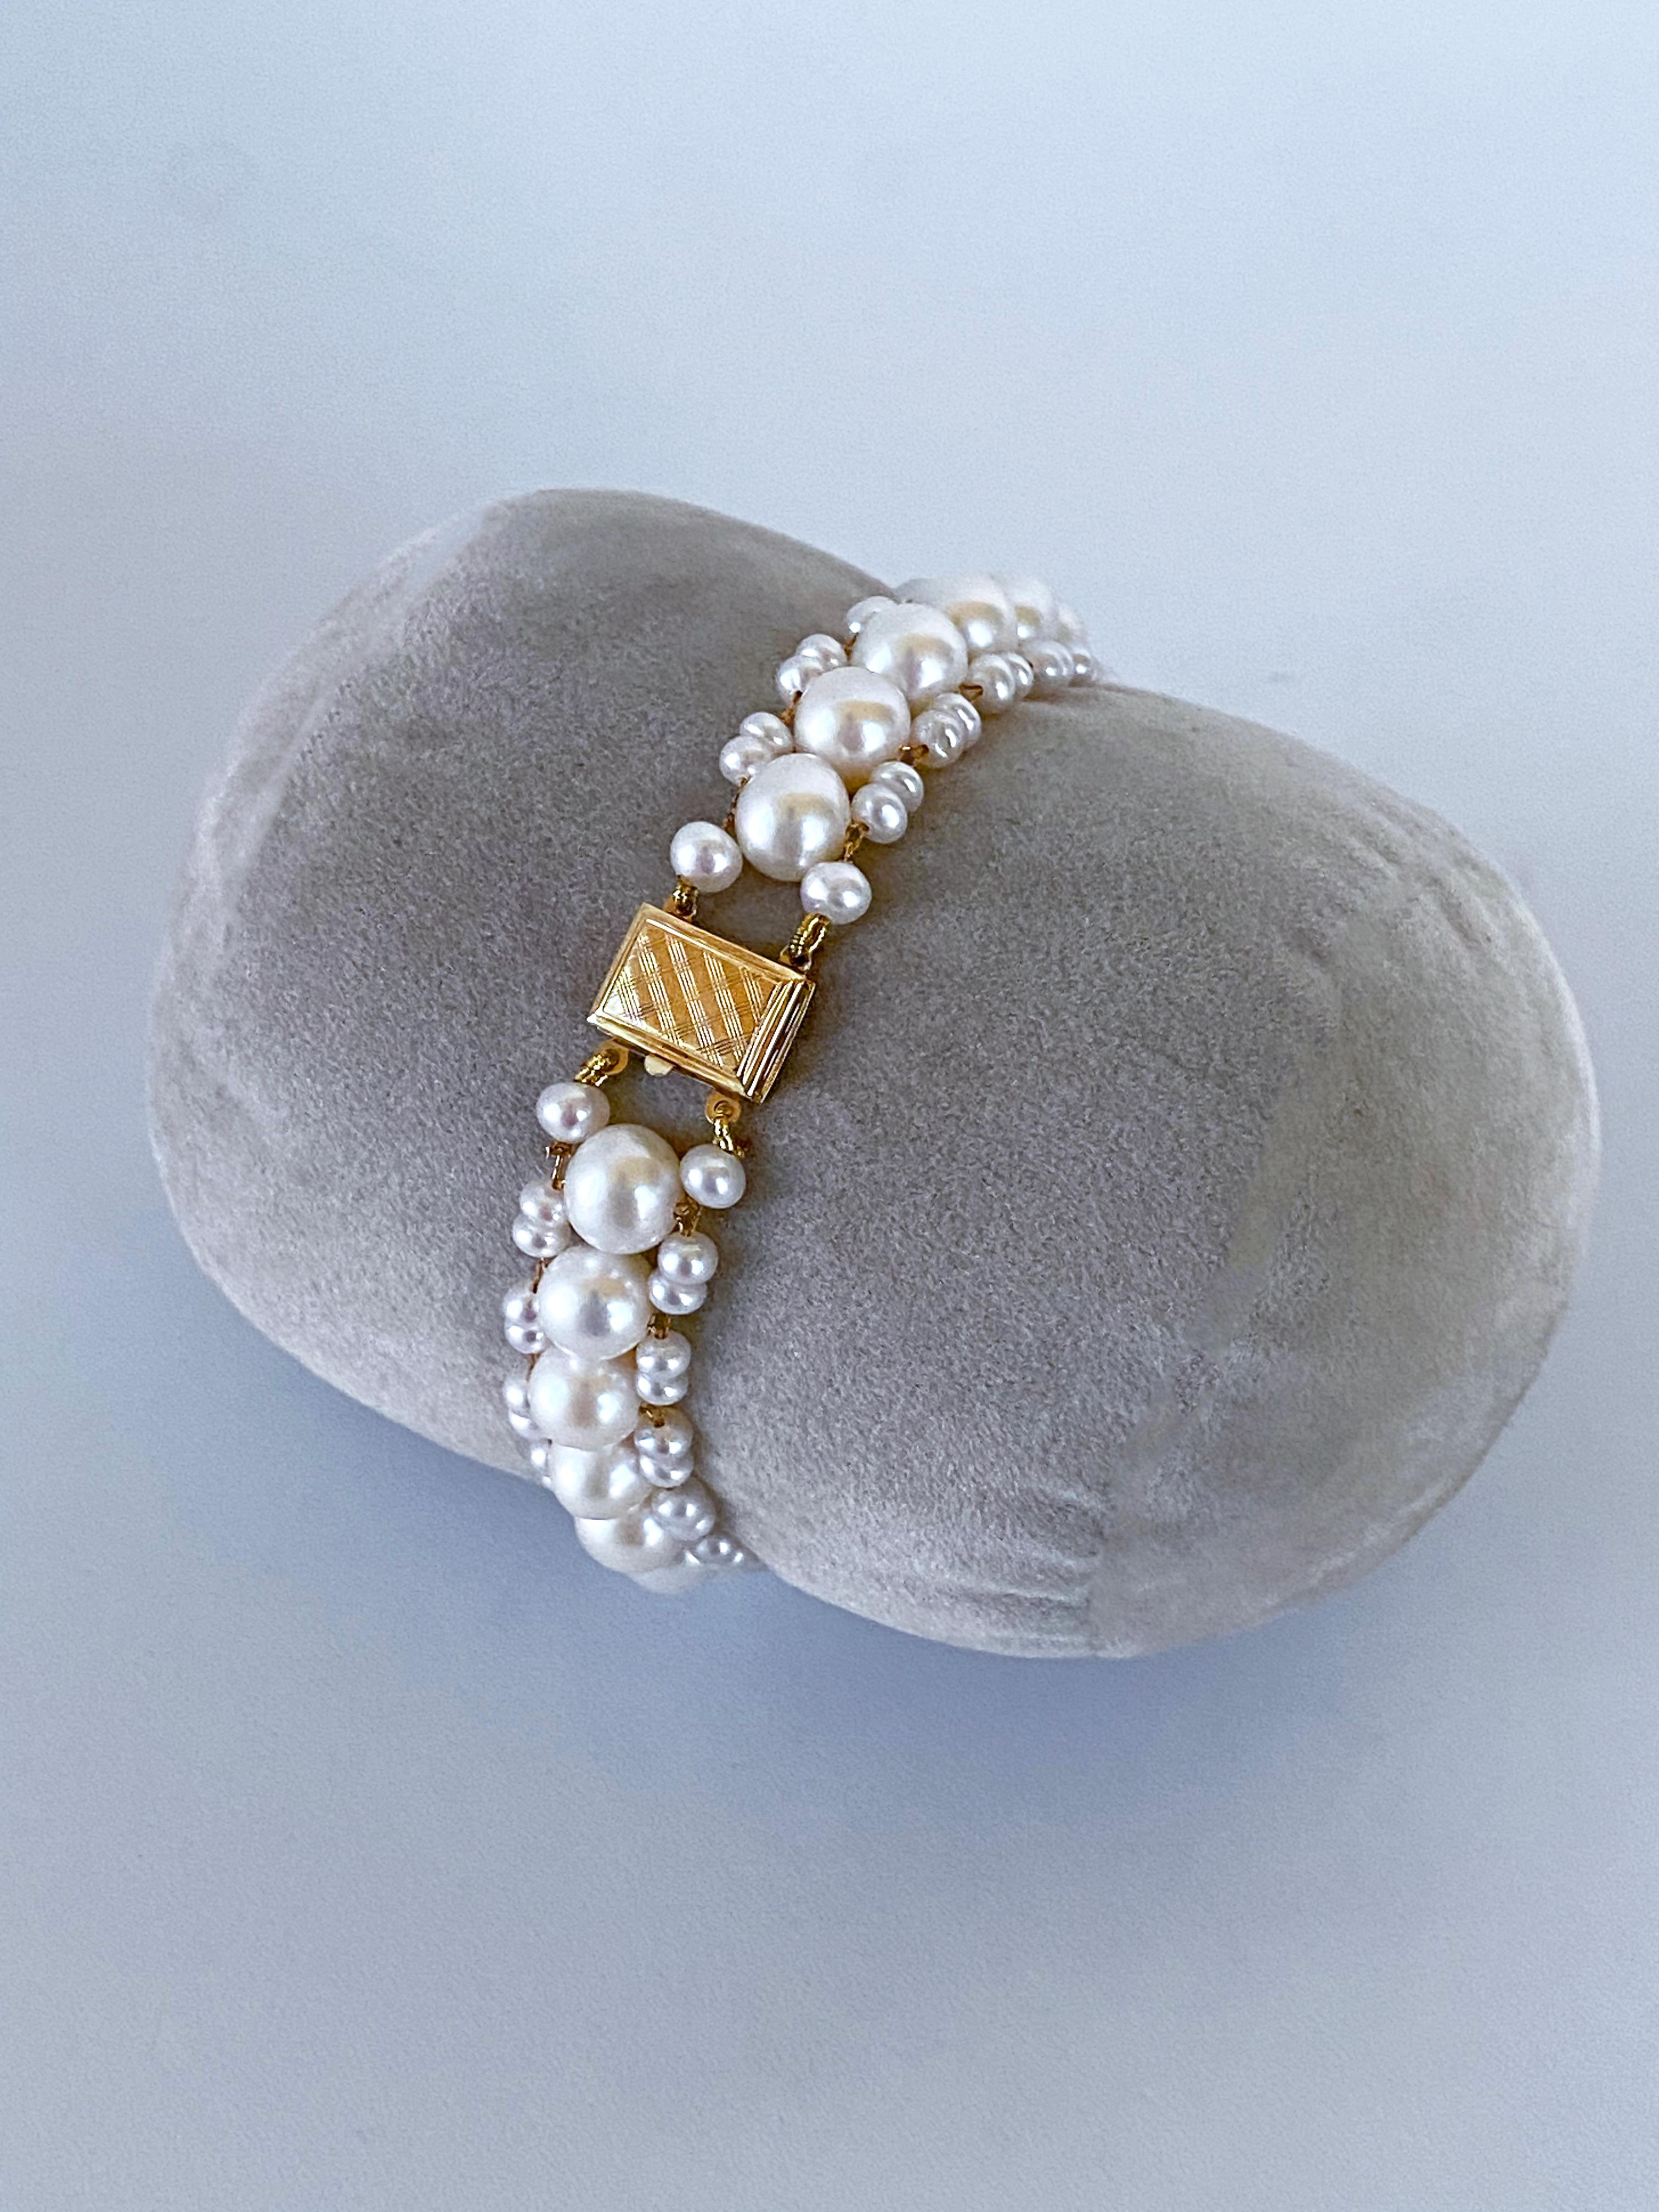 Wunderschönes, schlichtes und elegantes Stück von Marina J. Dieses Armband besteht aus weißen Zuchtperlen mit einem sanft schillernden Glanz. Mit Goldfäden werden die Perlen zu einem säulenartigen Muster verwoben, das perfekt zum Glanz der Perlen